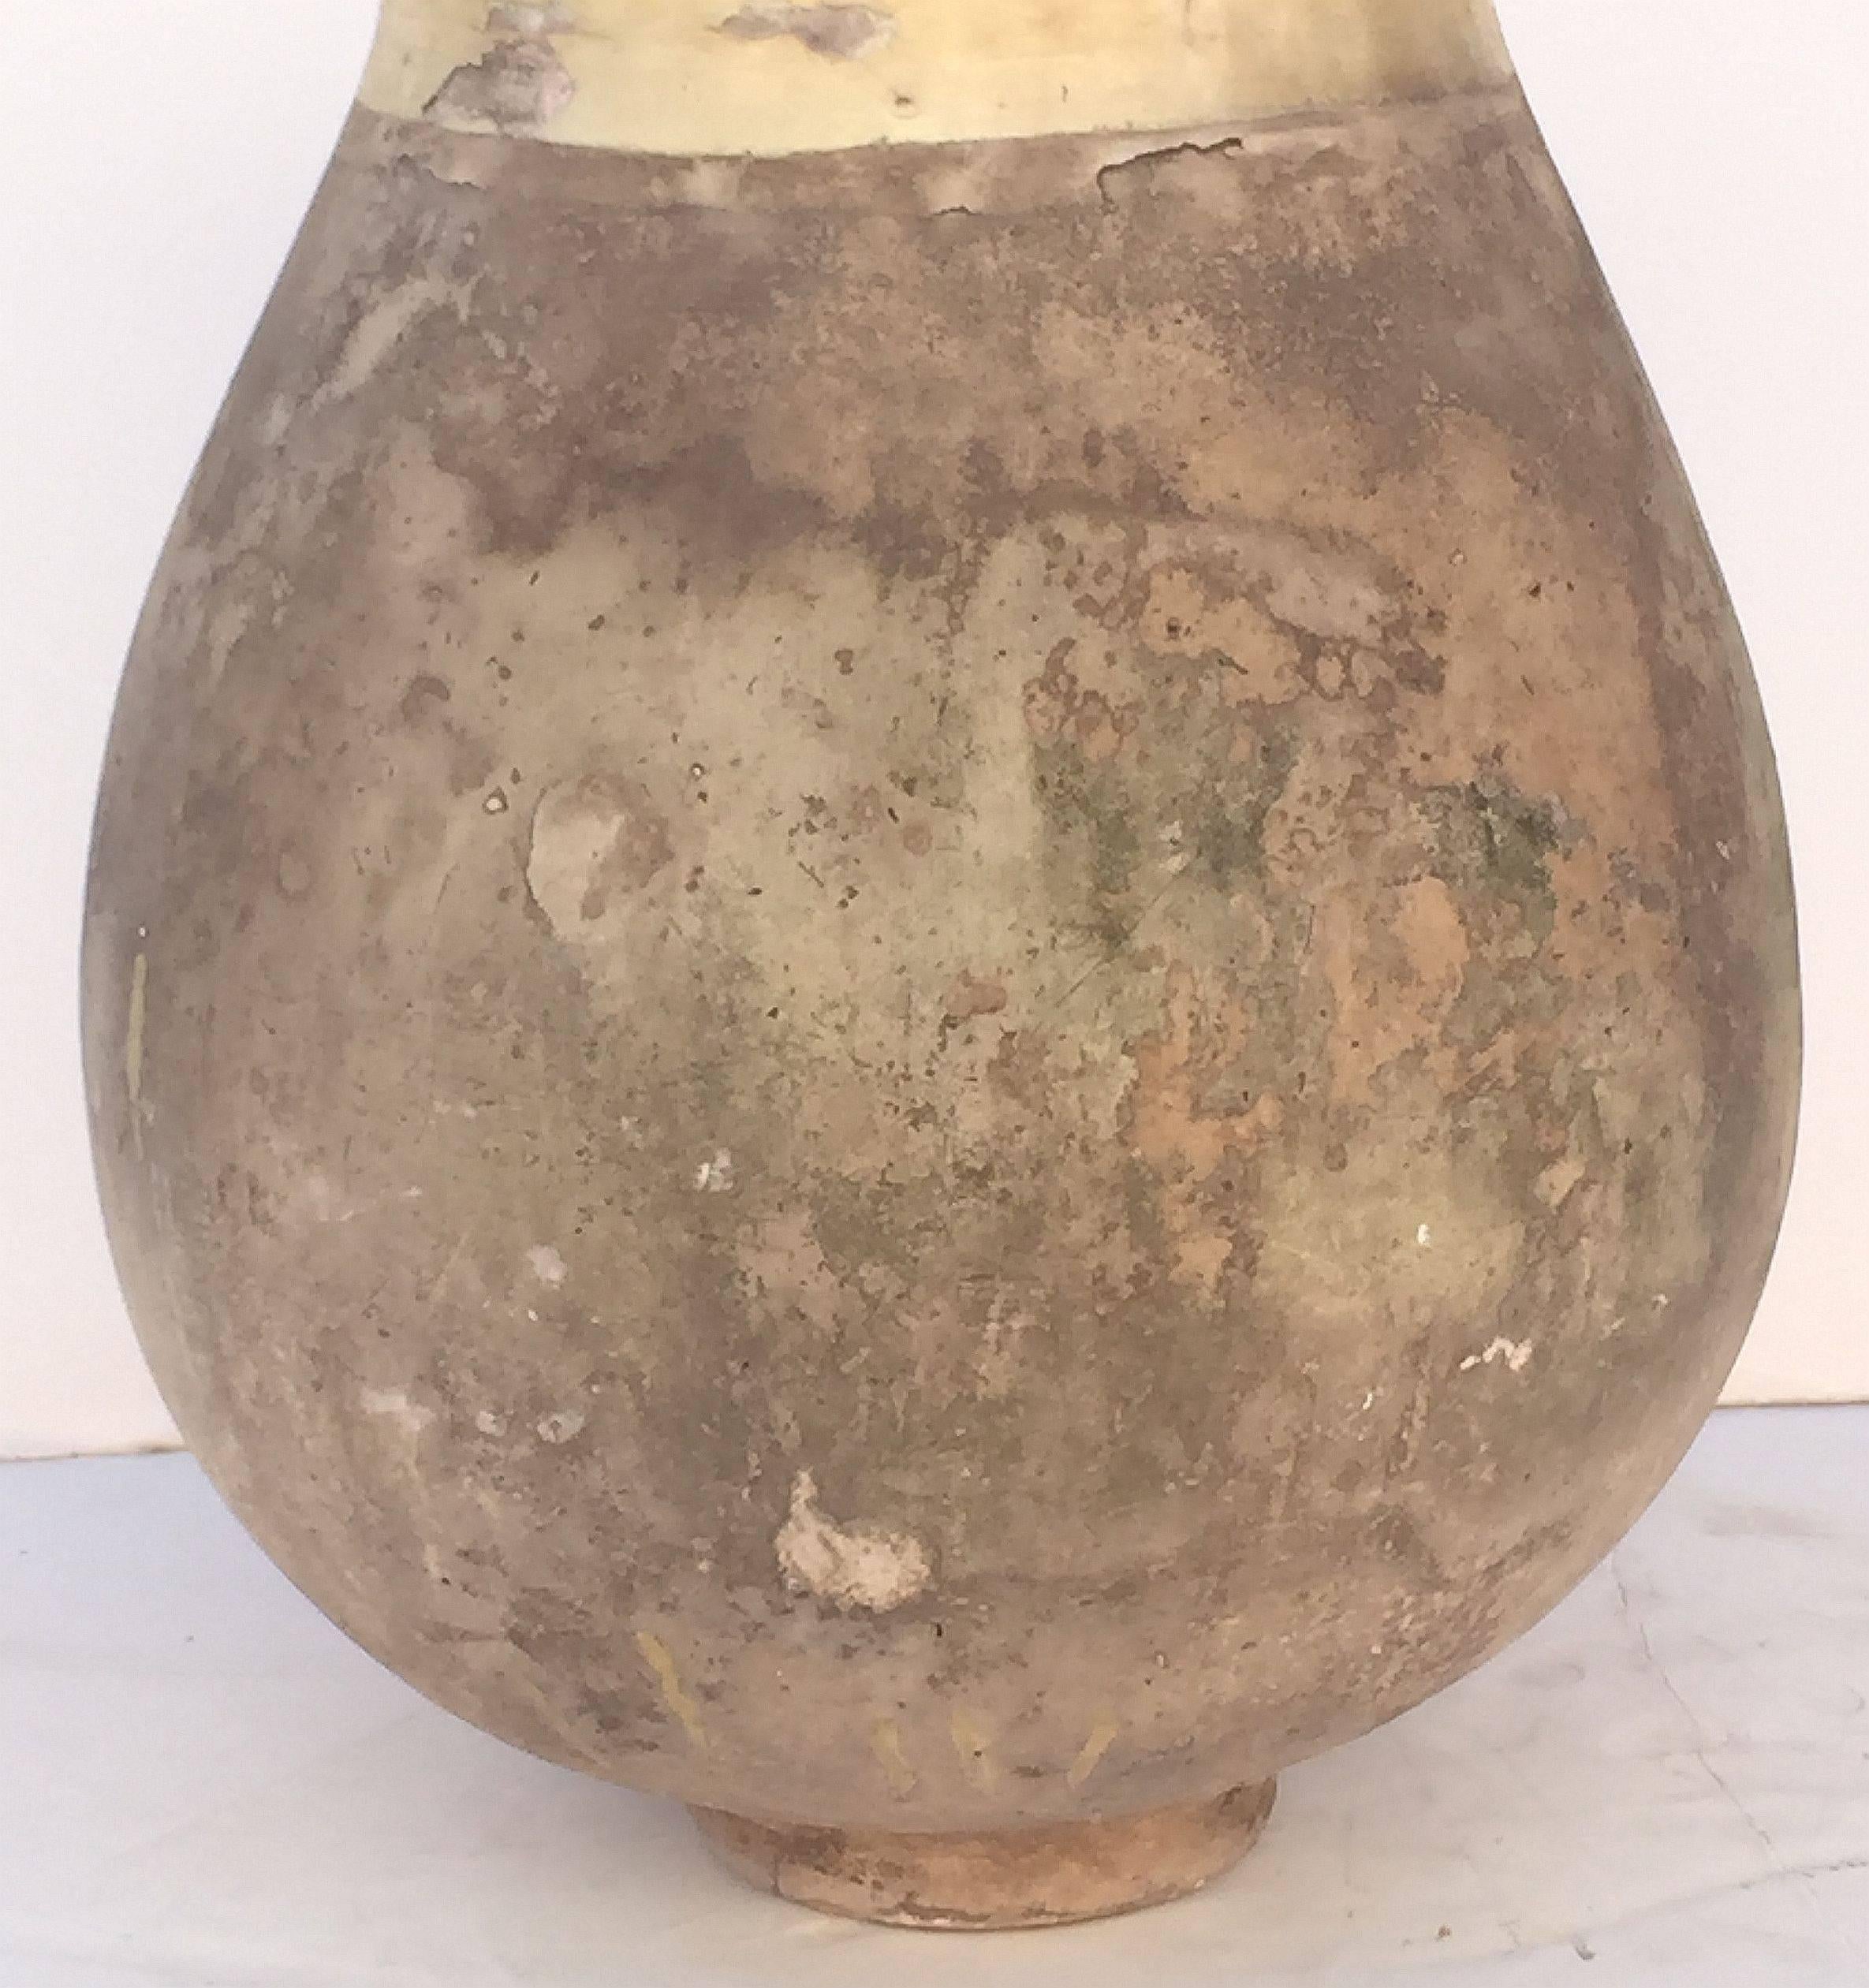 Earthenware Large Biot Garden Urn or Oil Jar from France